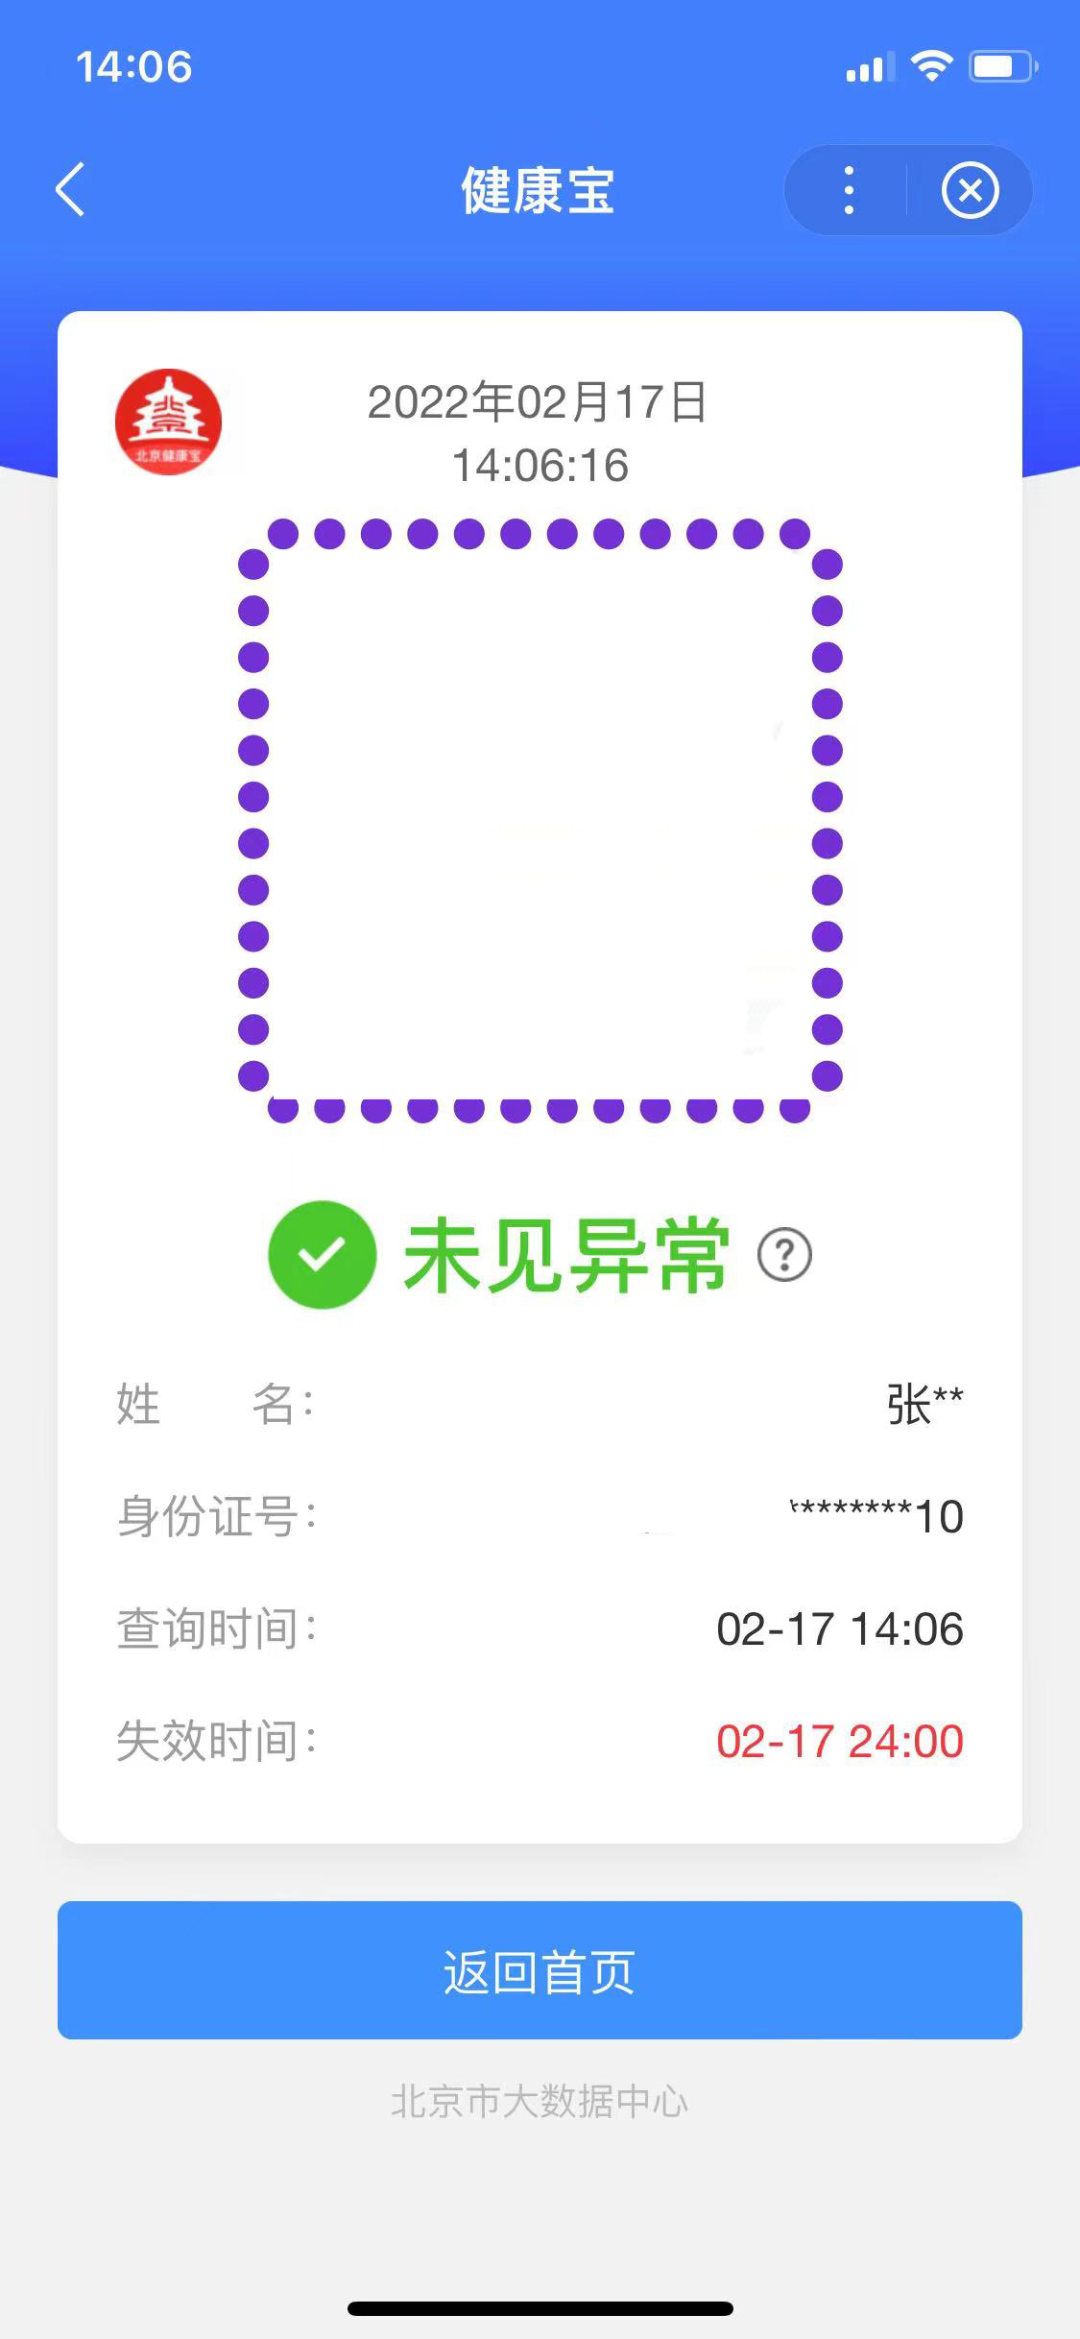 北京二维码 健康宝图片